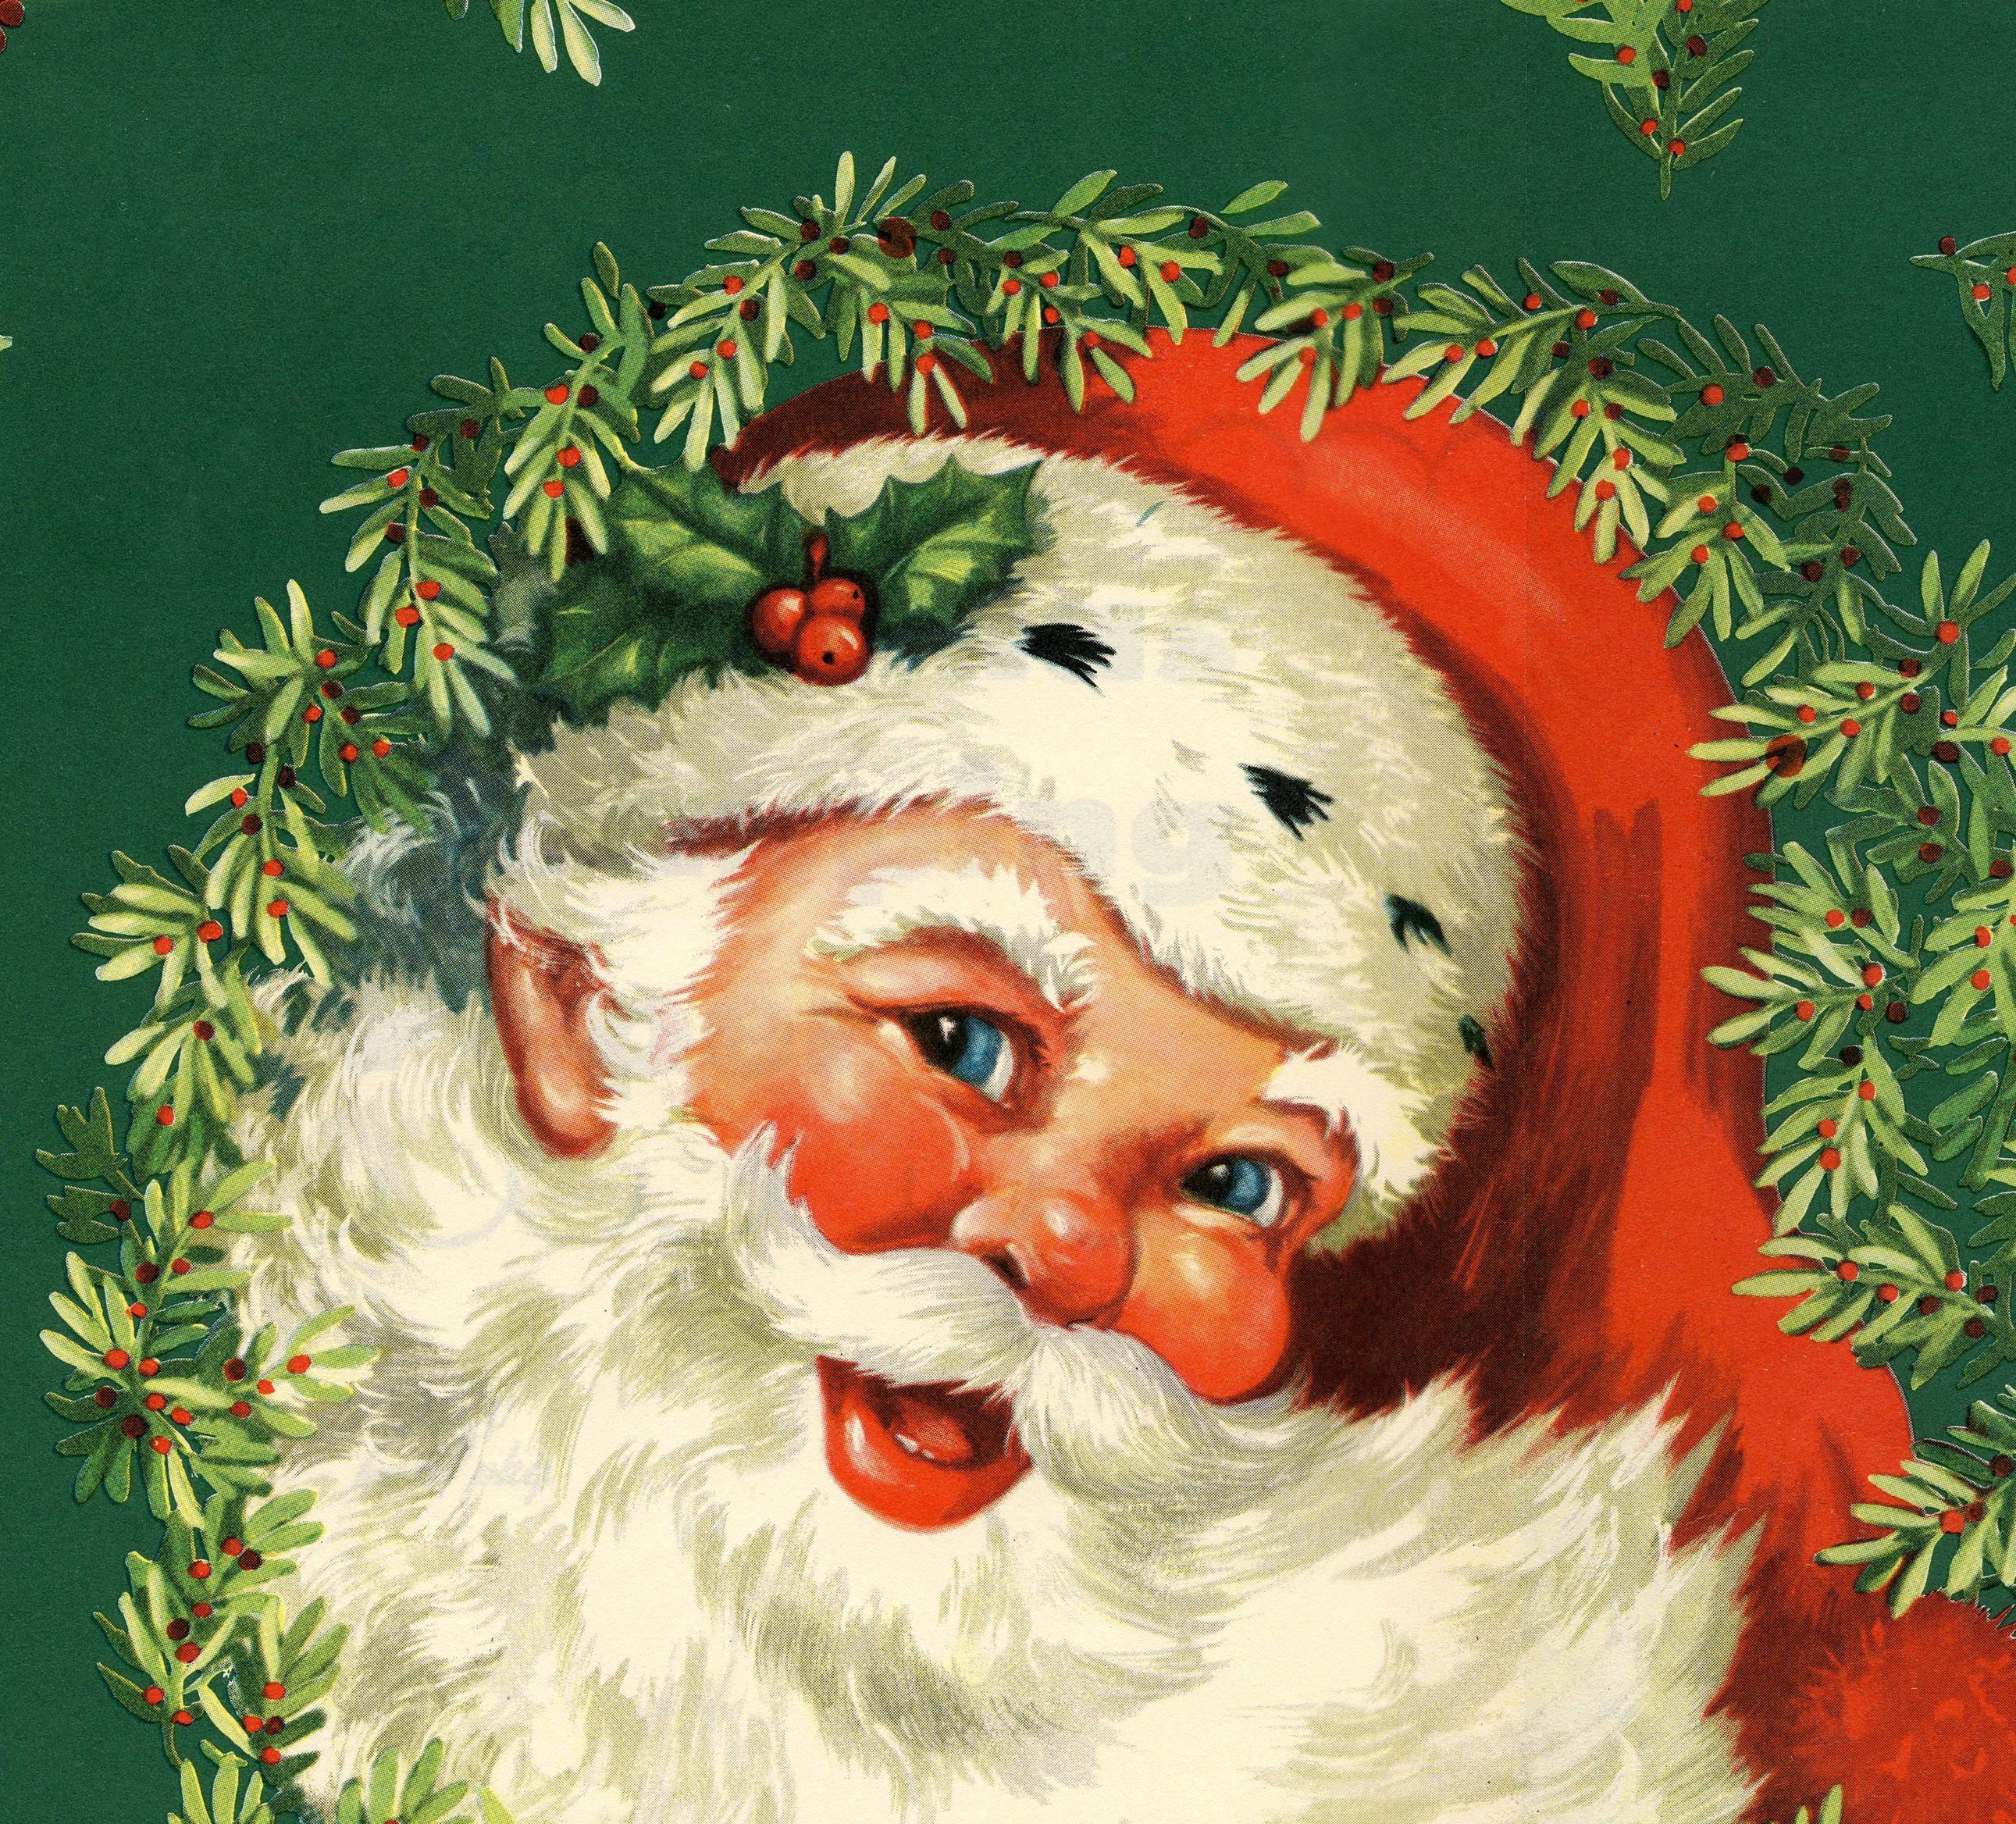 Vintage Santa Christmas Desktop Wallpapers Top Free Vintage Santa Christmas Desktop